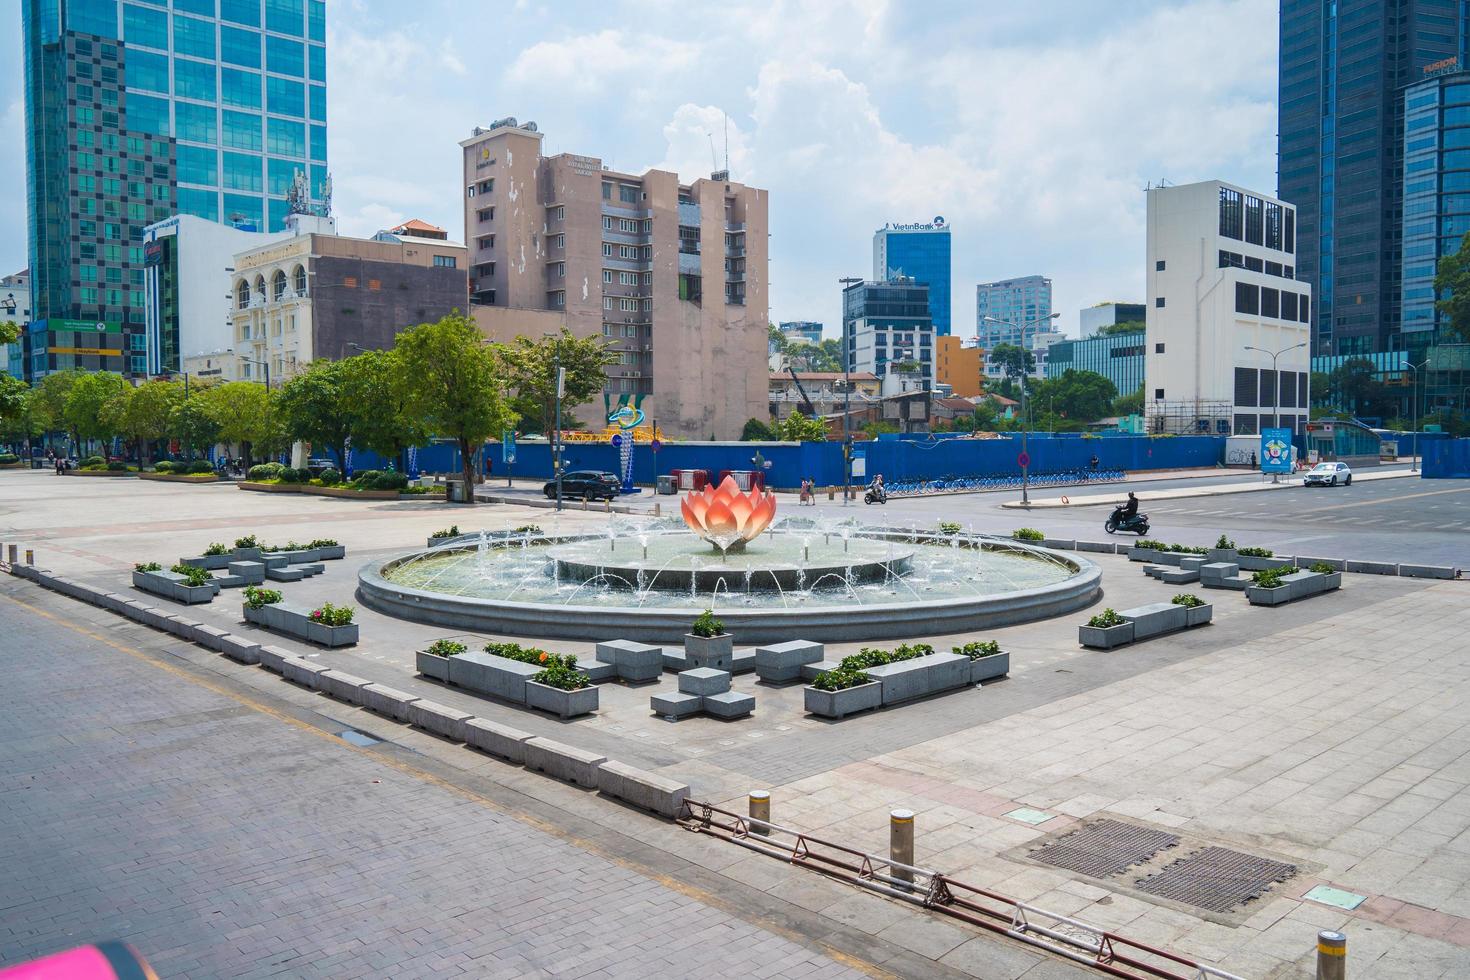 ho chi minh, vietnam 13 febbraio 2022 una fontana a forma di loto con belle luci sulla strada di nguyen hue che cammina di fronte alla statua di ho chi minh e al comitato popolare di ho chi minh foto